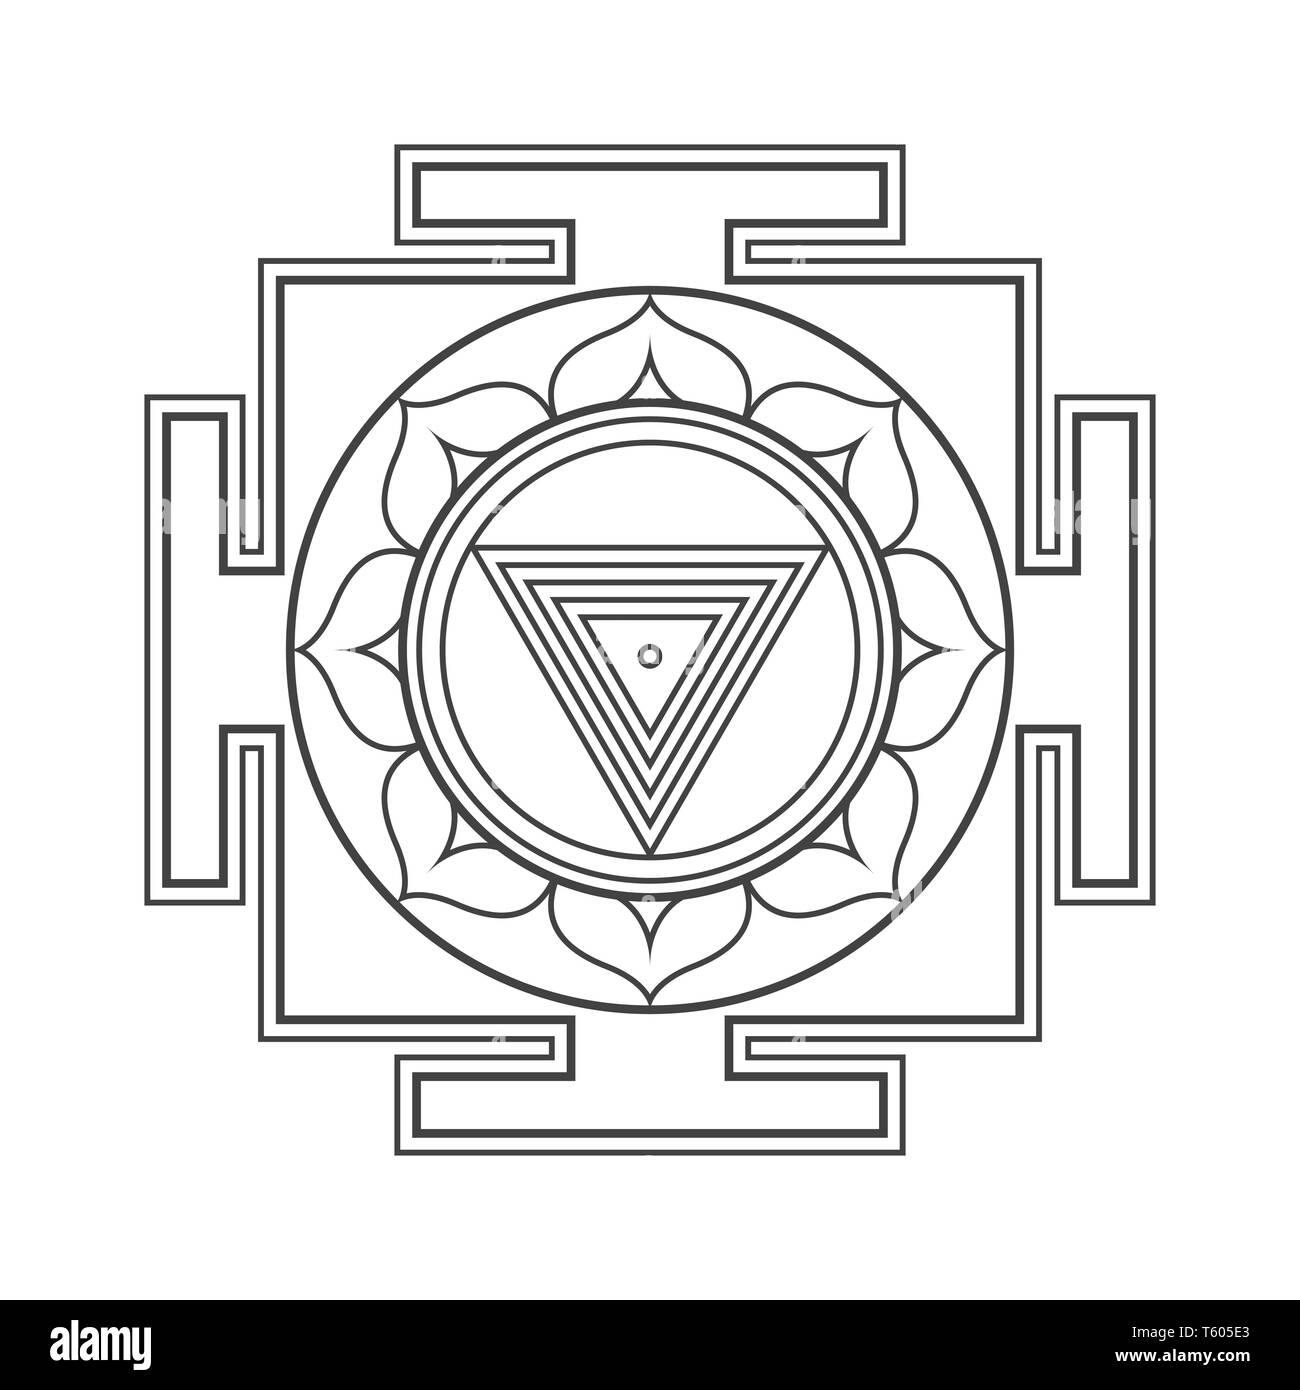 Design Vectoriel monochrome noir Maha Kali Yantra Dasa Mahavidya aspect divin de la géométrie sacrée illustration bhupura mandala pétales du lotus blanc isolé Illustration de Vecteur